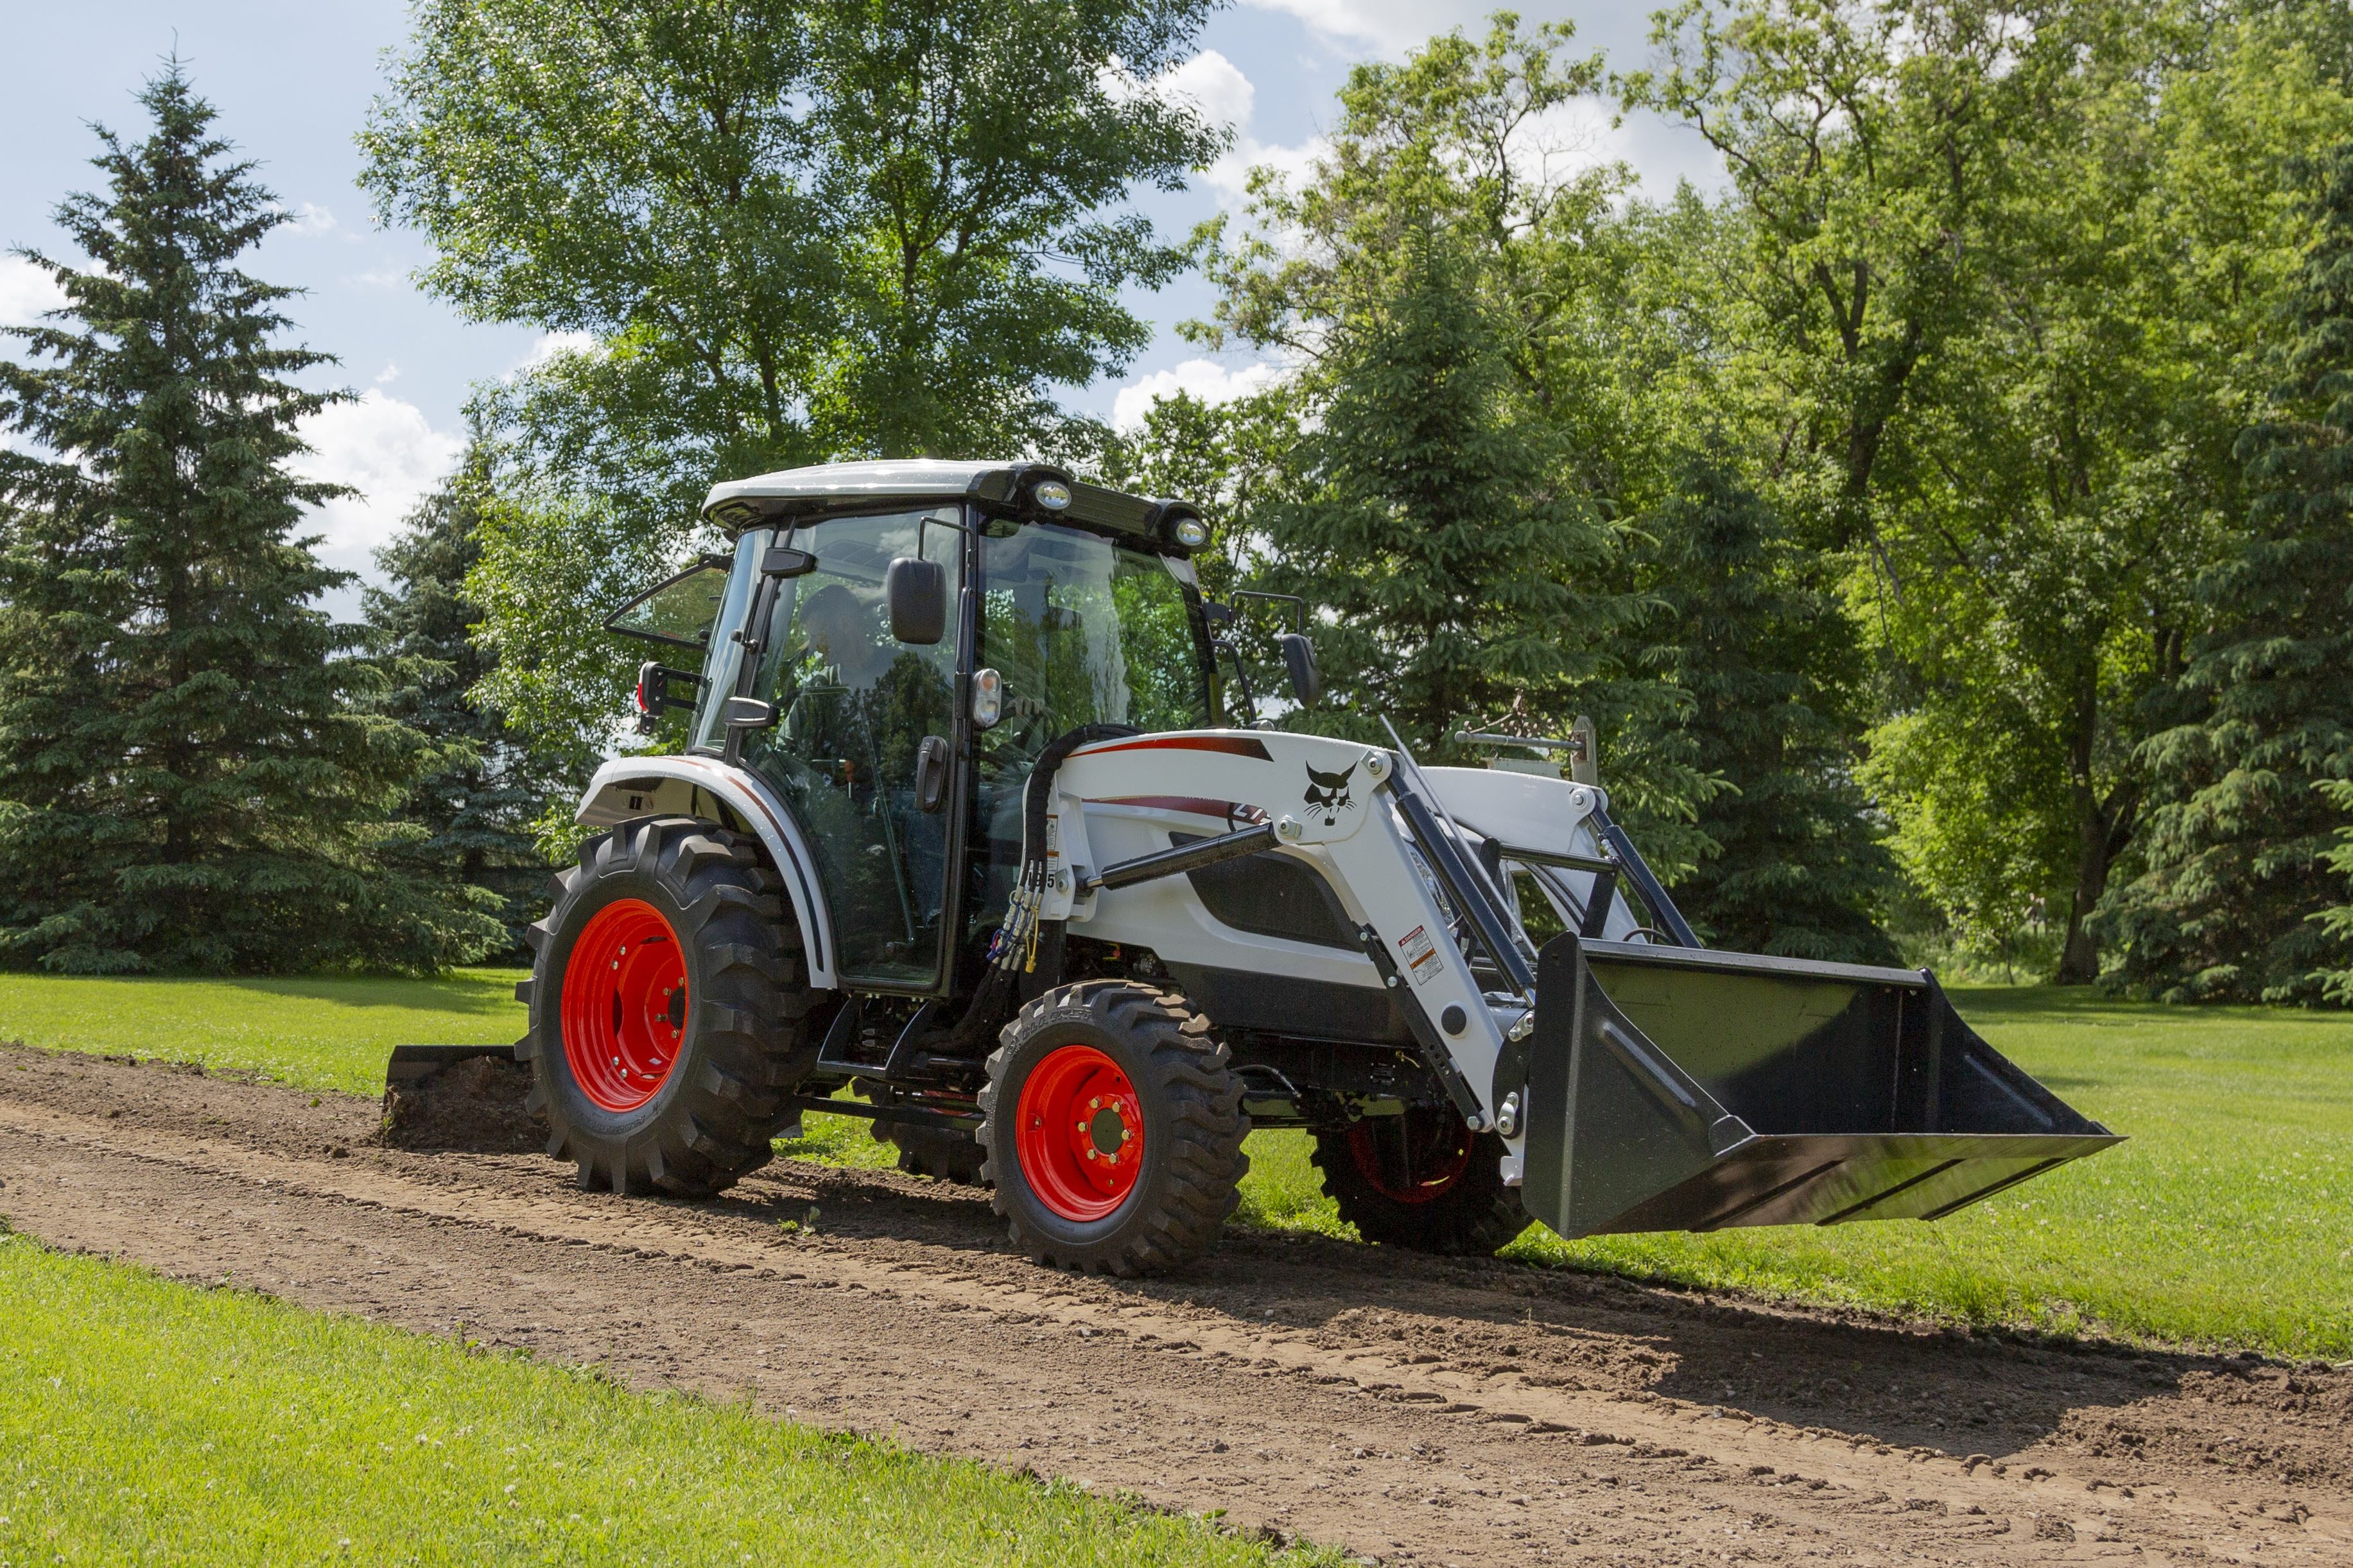 두산밥캣이 최근 북미시장에 출시한 콤팩트 트랙터(Compact Tractor), CT5558 모델